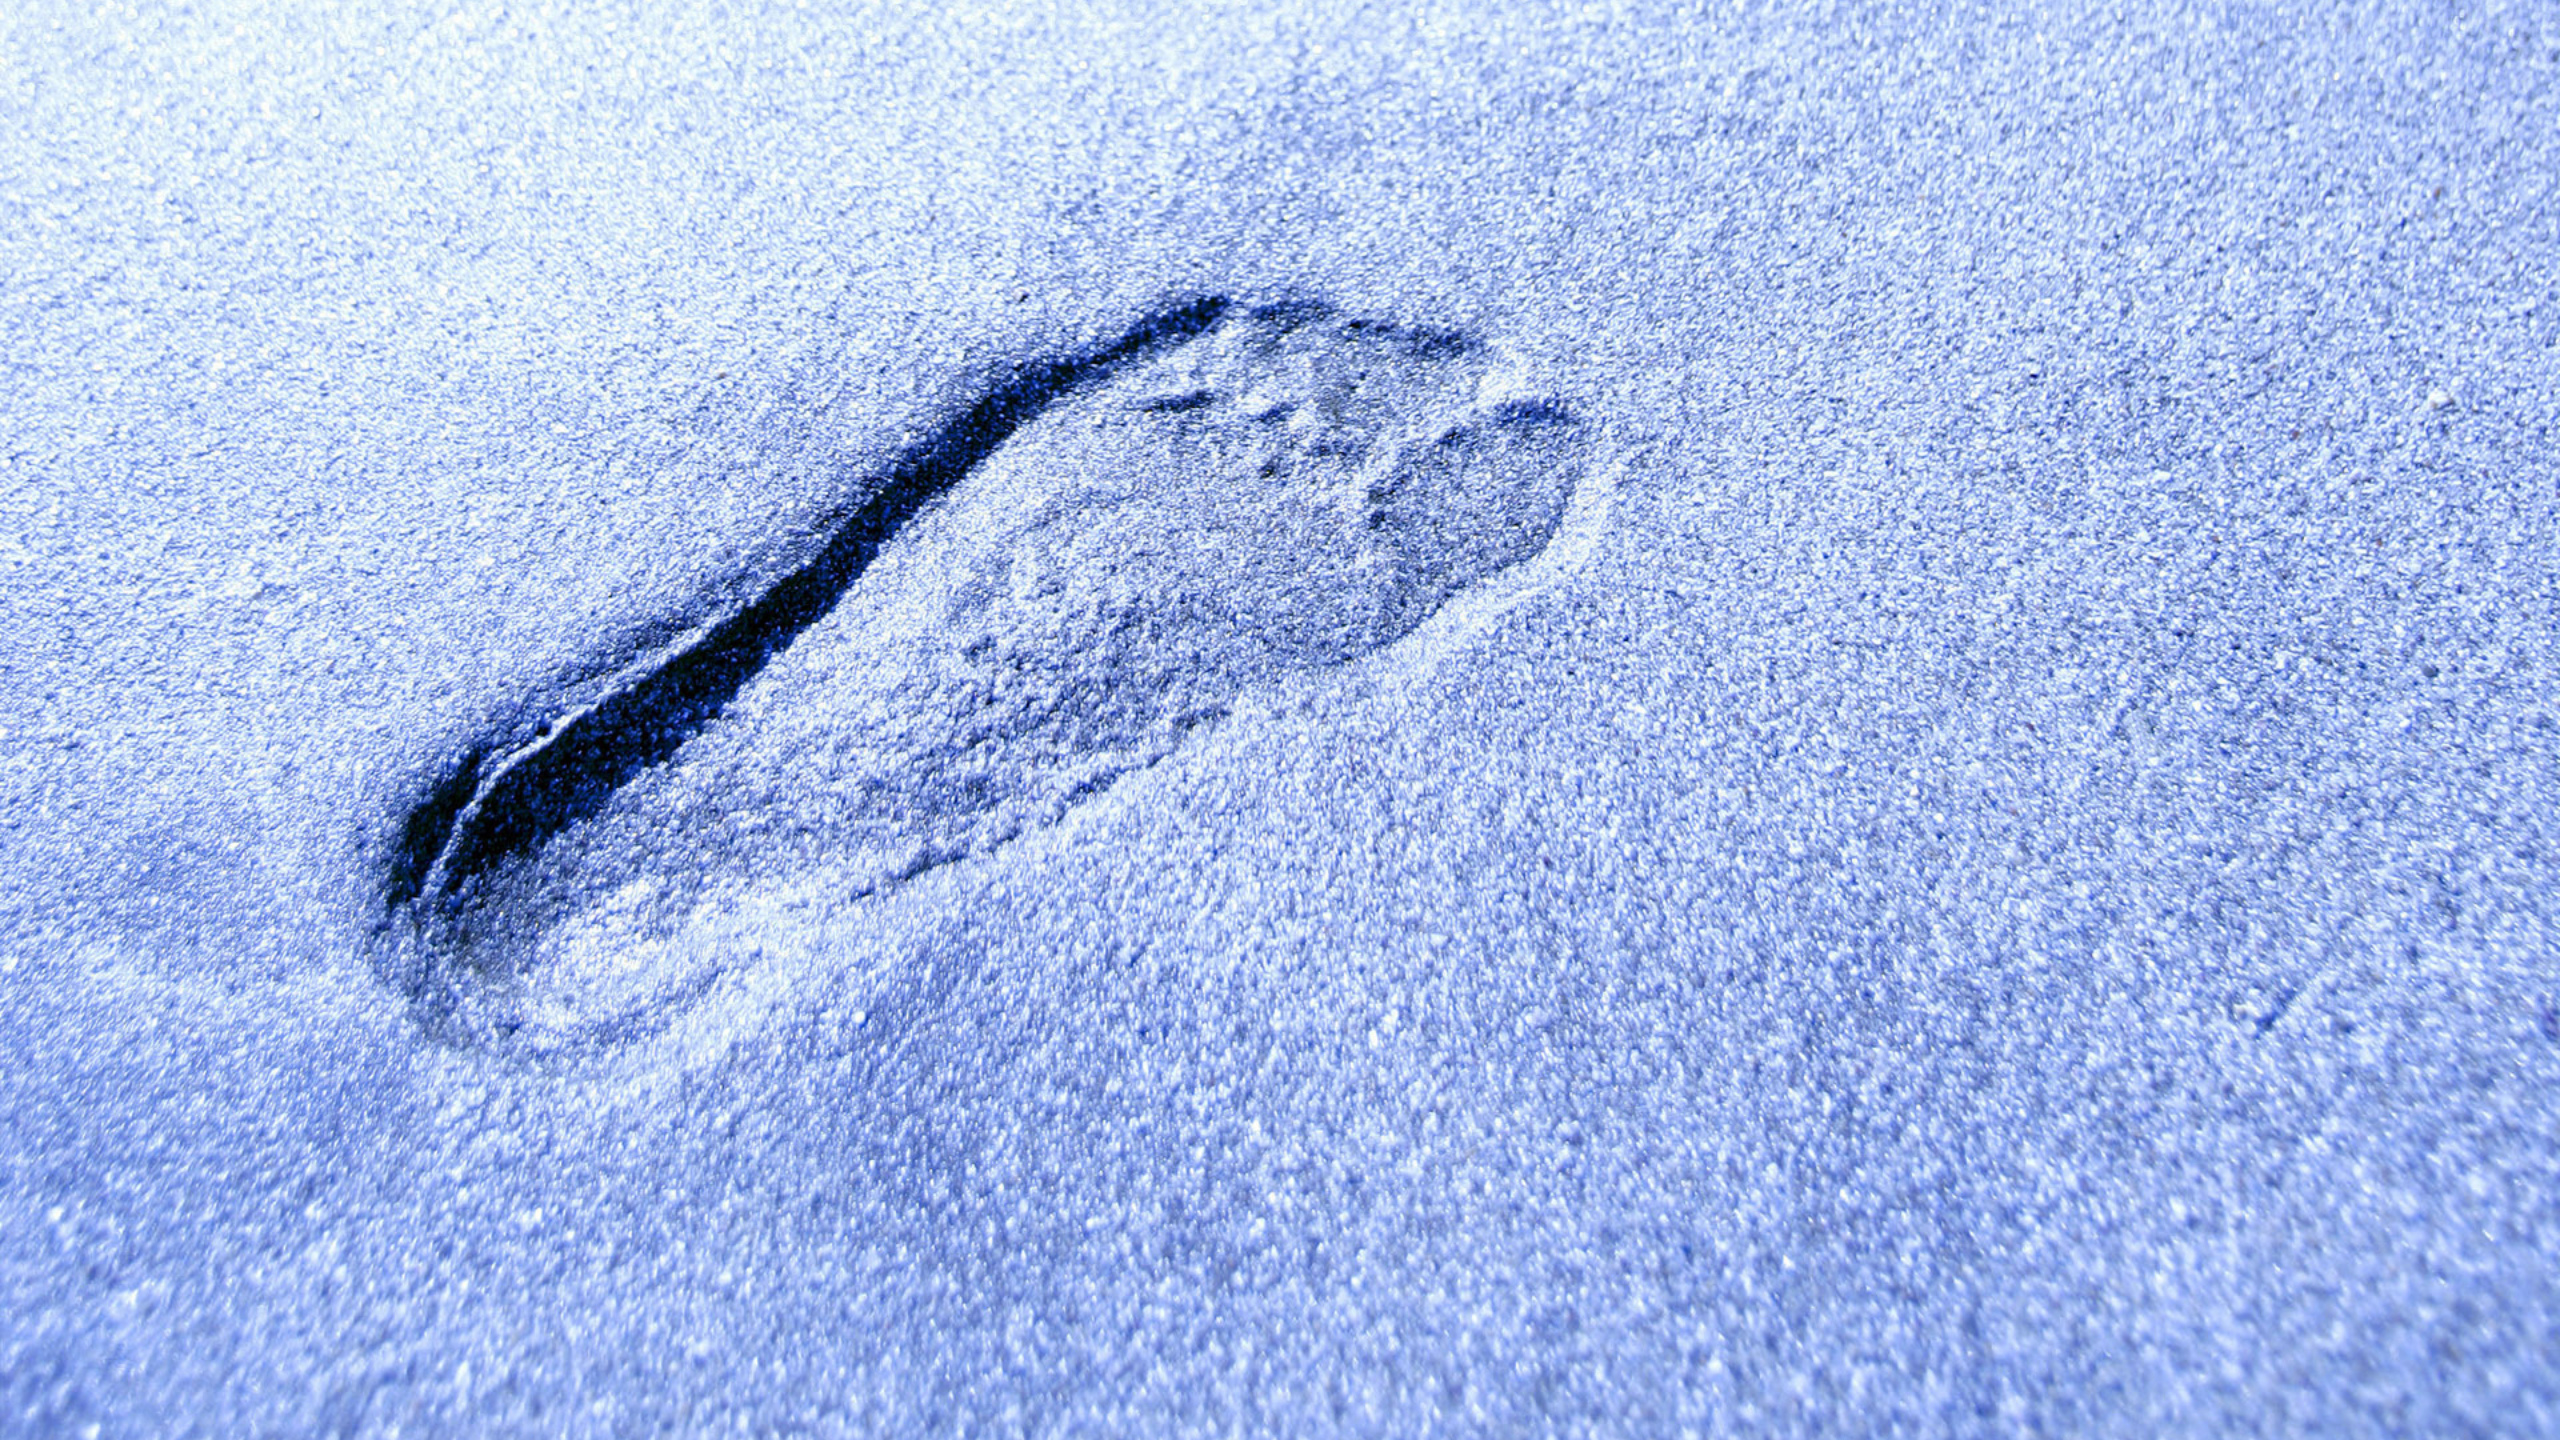 Остаются лишь следы. Следы на снегу. Следы. Отпечатки ног на снегу. Человеческие следы.